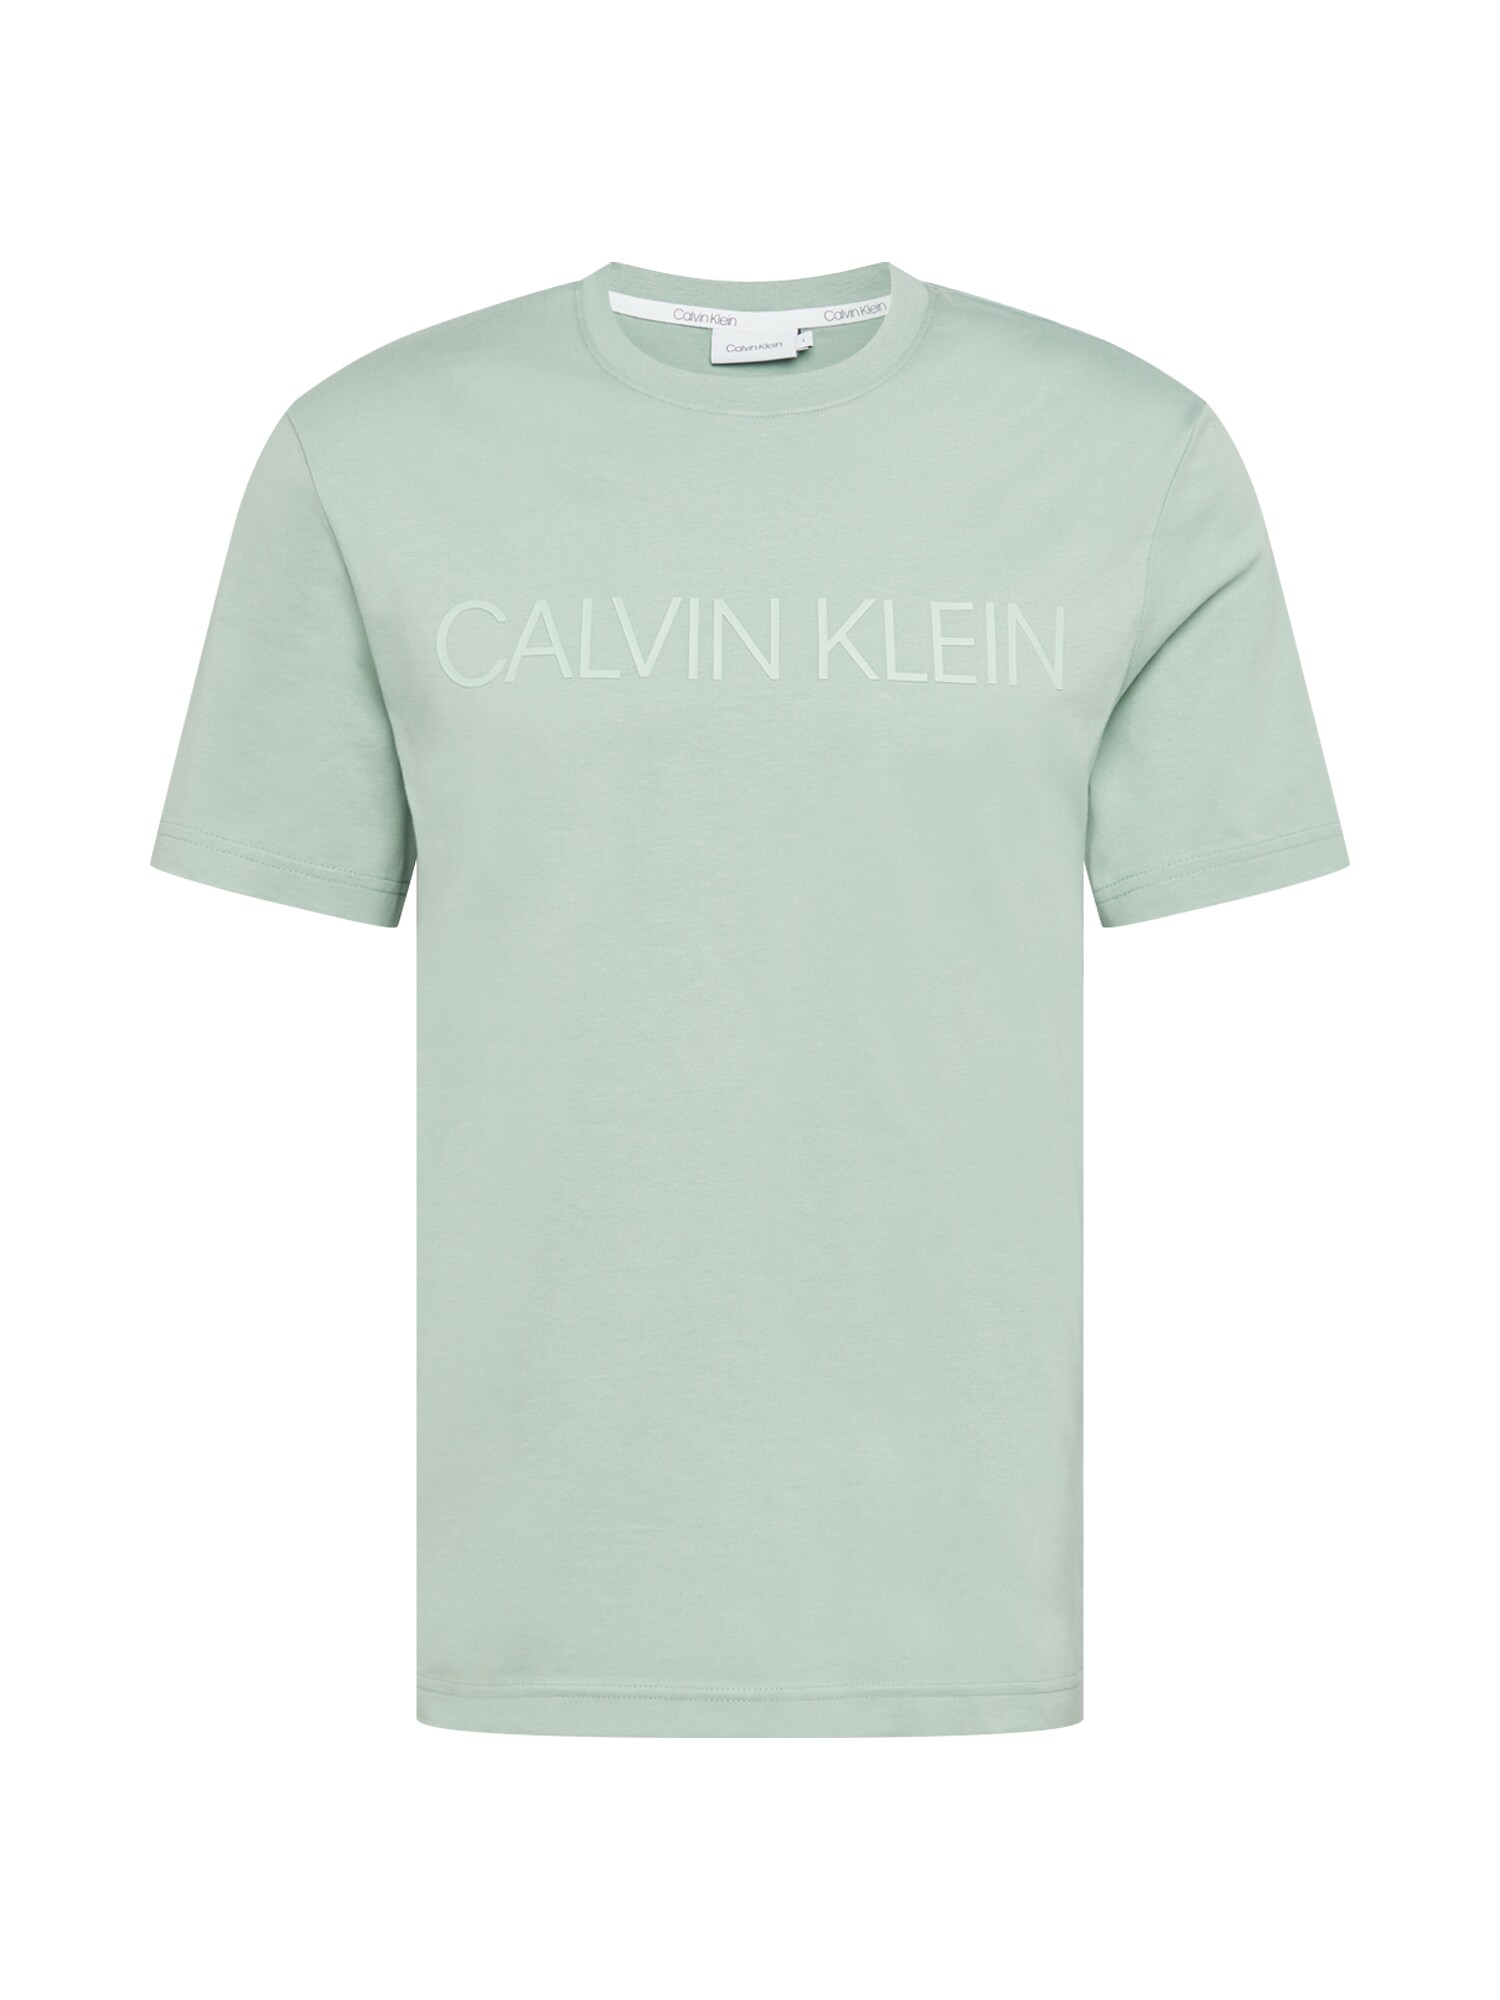 Calvin Klein Marškinėliai  mėtų spalva / balta